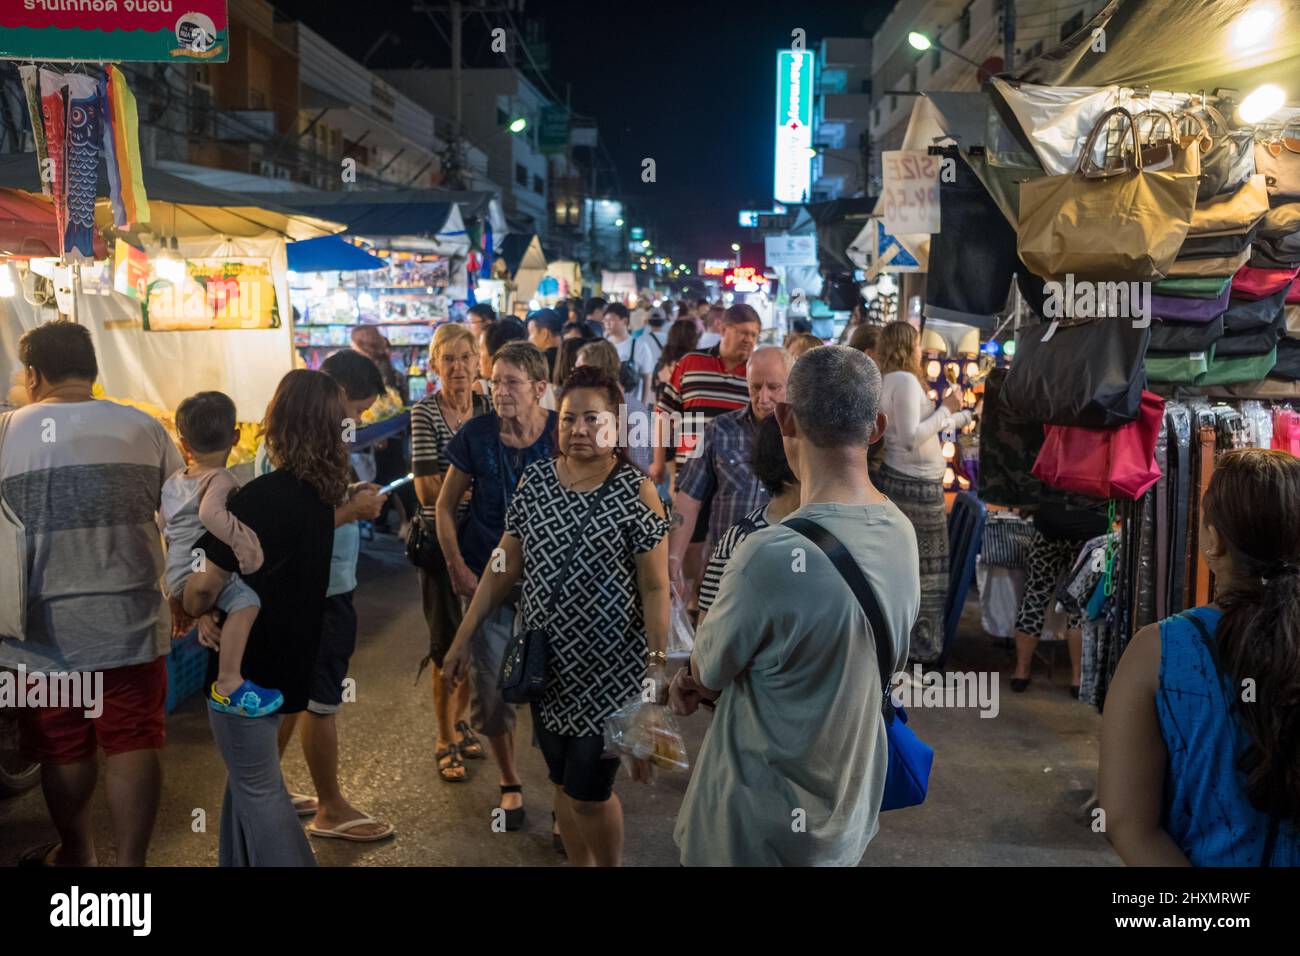 Scène urbaine du célèbre marché nocturne de Hua Hin. Hua Hin est l'une des destinations de voyage les plus populaires en Thaïlande. Banque D'Images